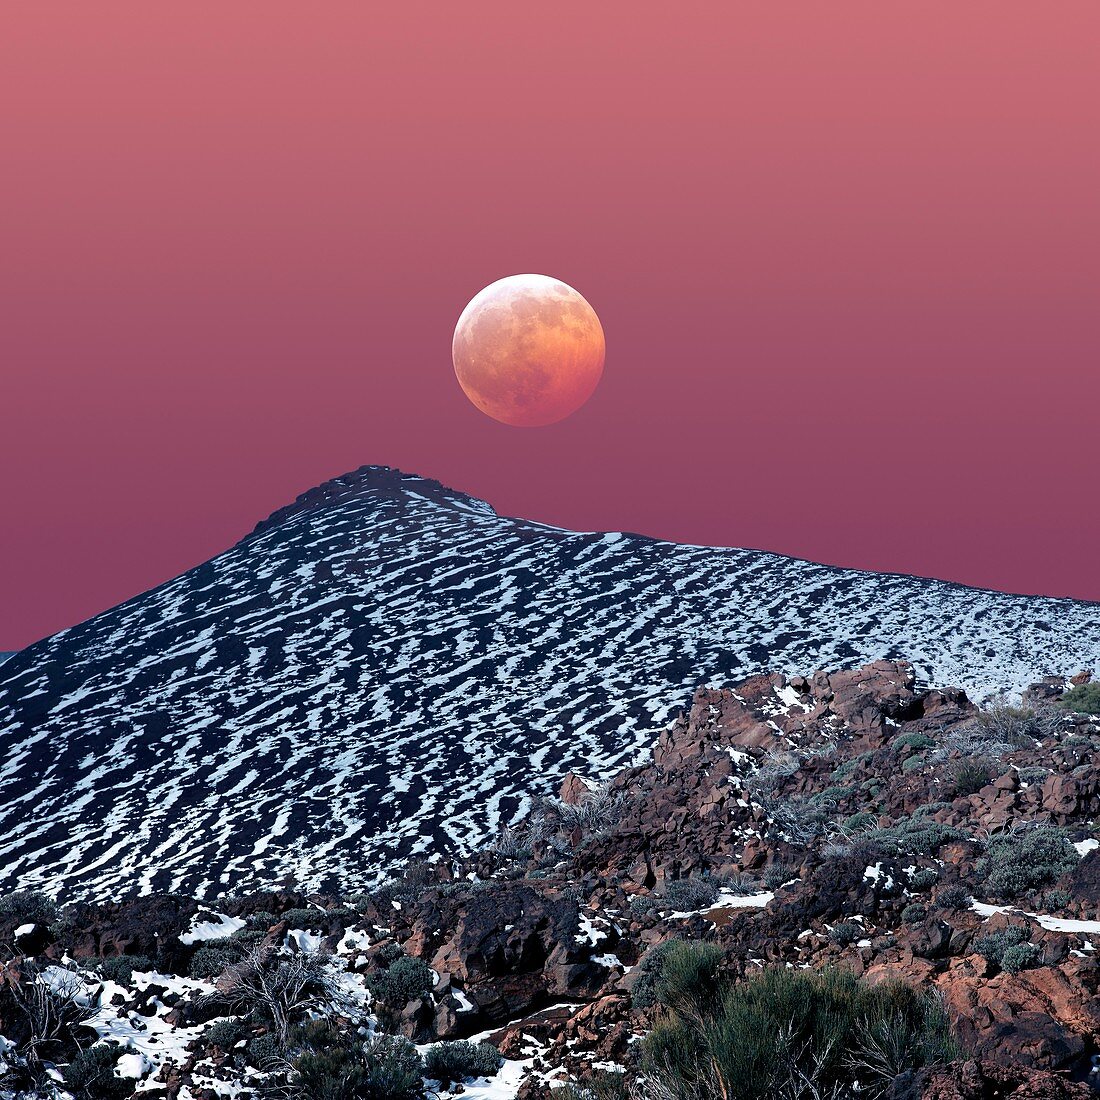 Partial lunar eclipse, composite image